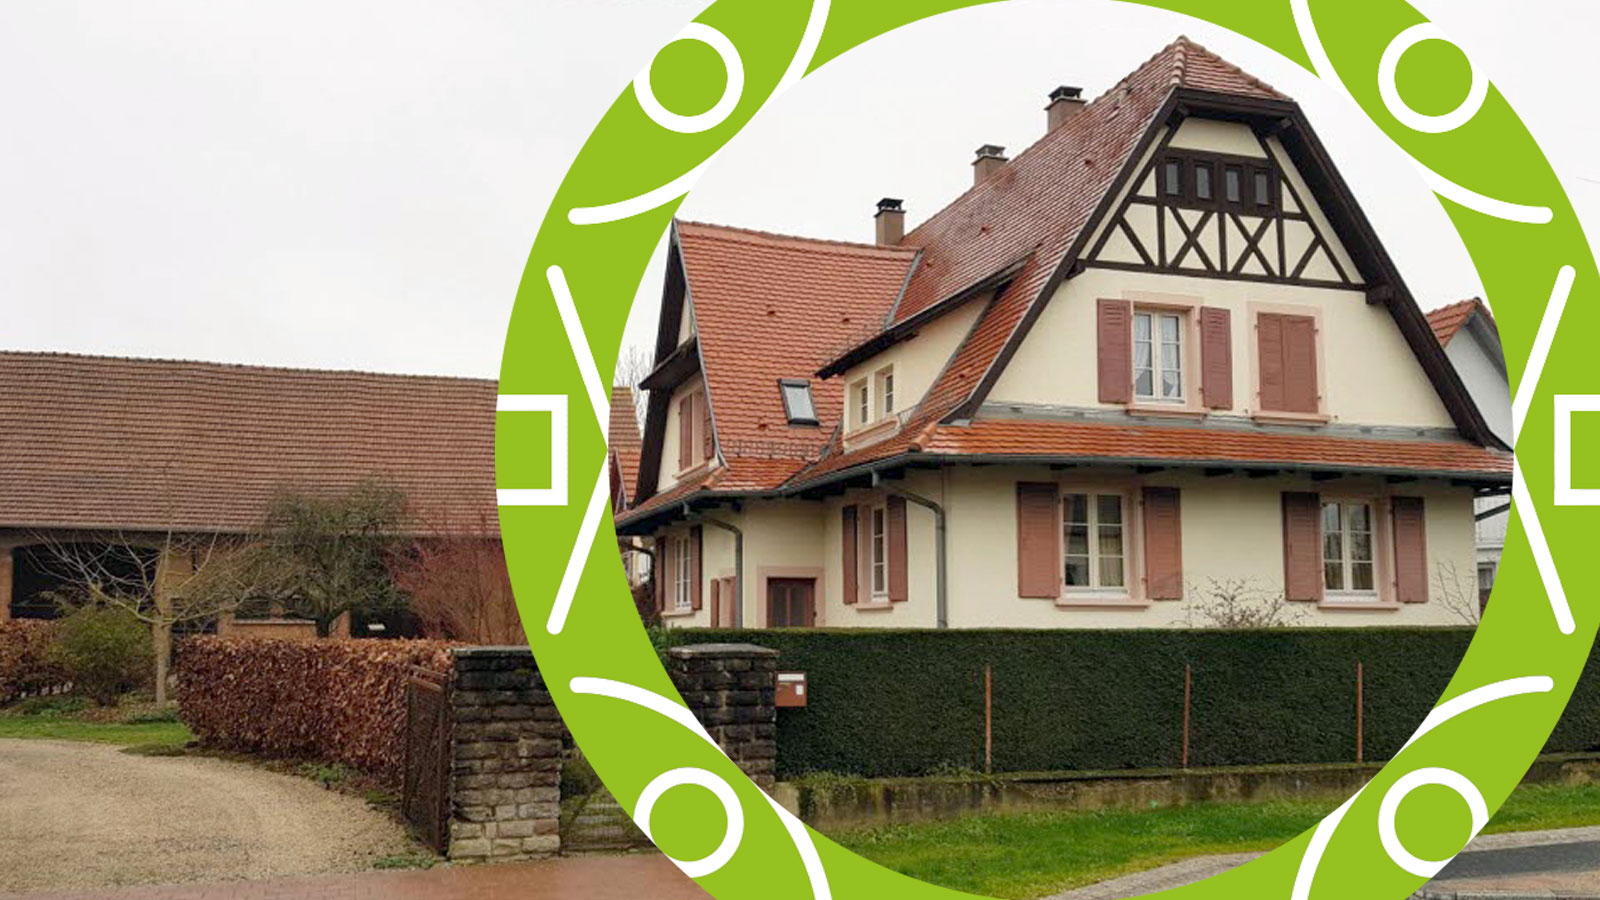 Au coeur du village de Seebach, un projet de résidence seniors se dessine